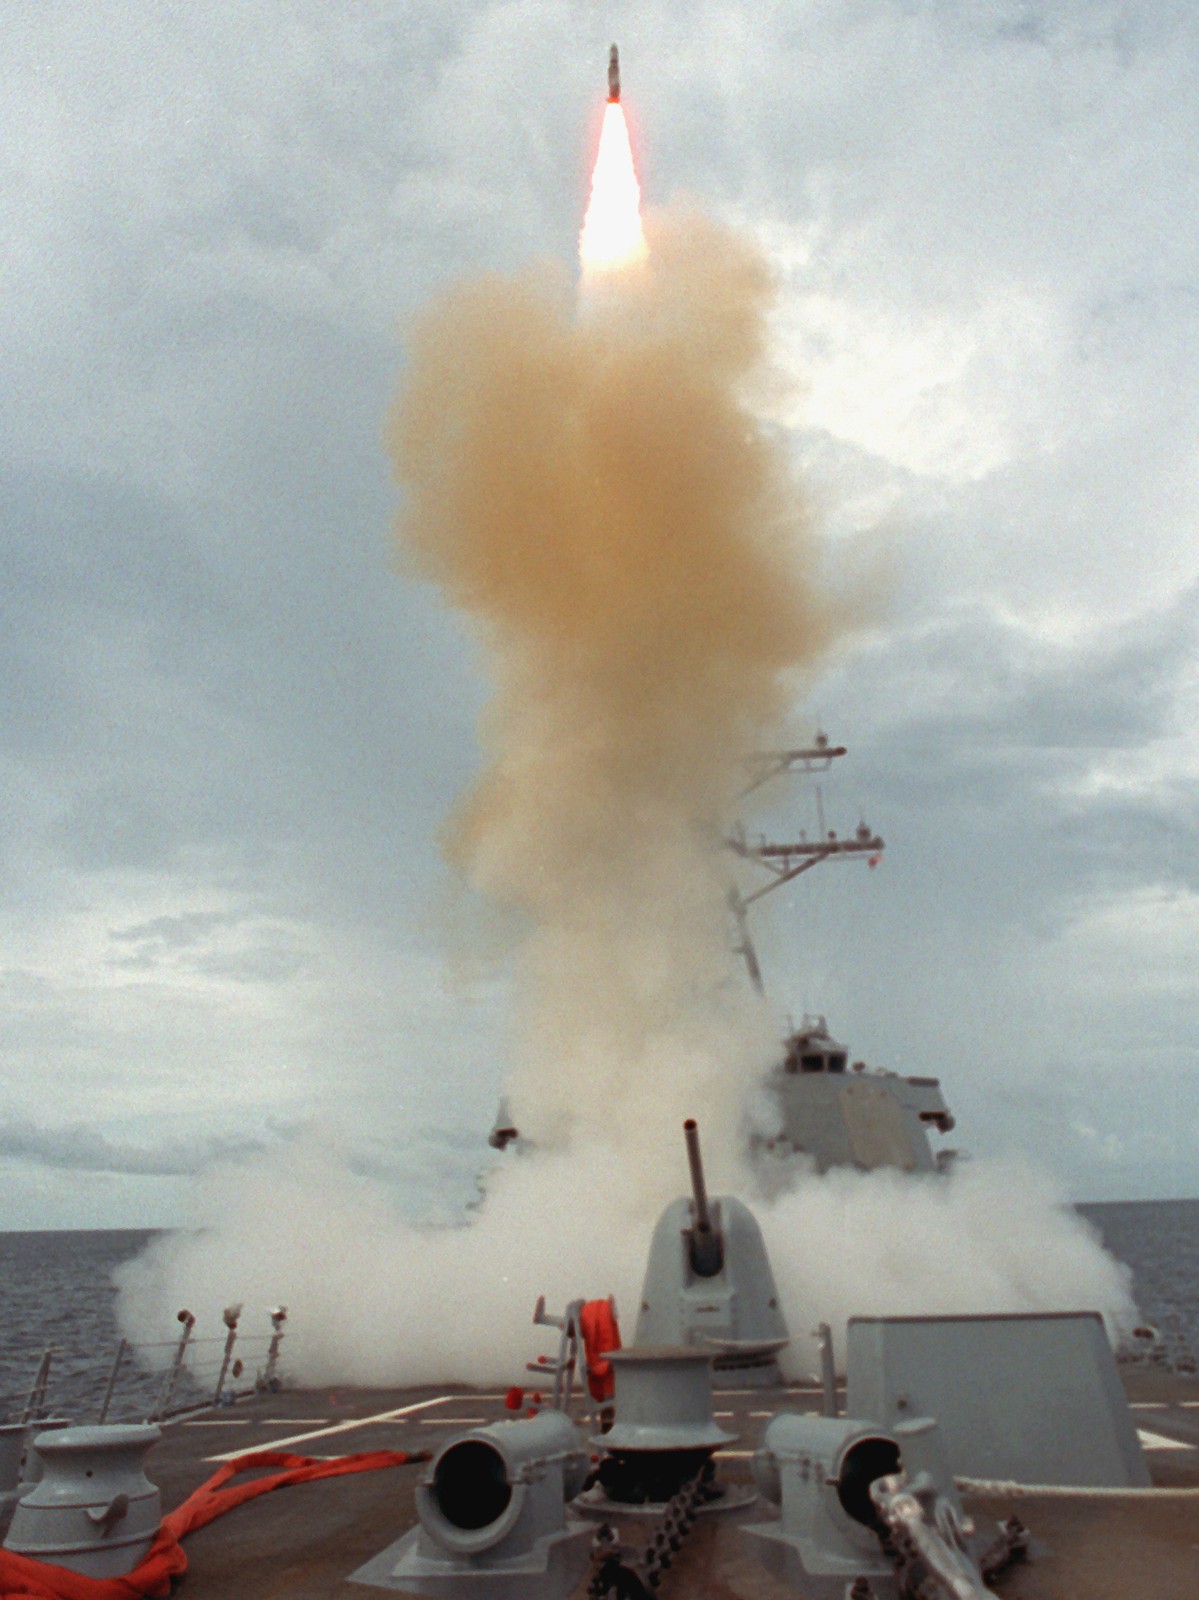 ddg-52 uss barry guided missile destroyer us navy 82 standard missile sm-2mr mk-41 vls